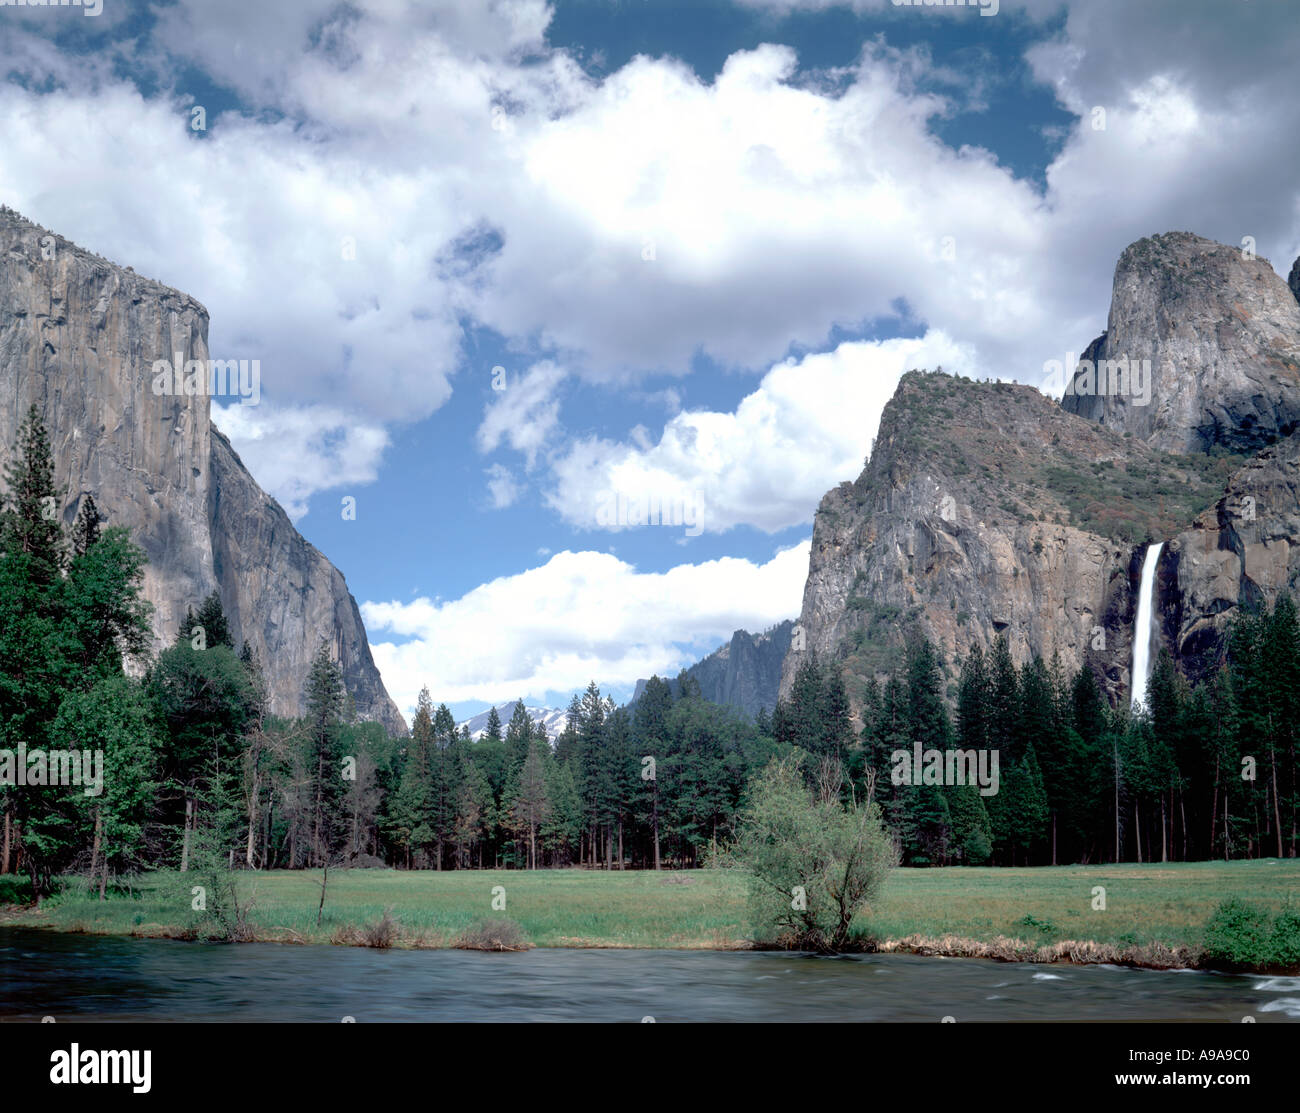 Yosemite National Park en Californie montrant les clés de la vue sur la vallée y compris El Capitan mountain et Bridal Veil Falls Banque D'Images